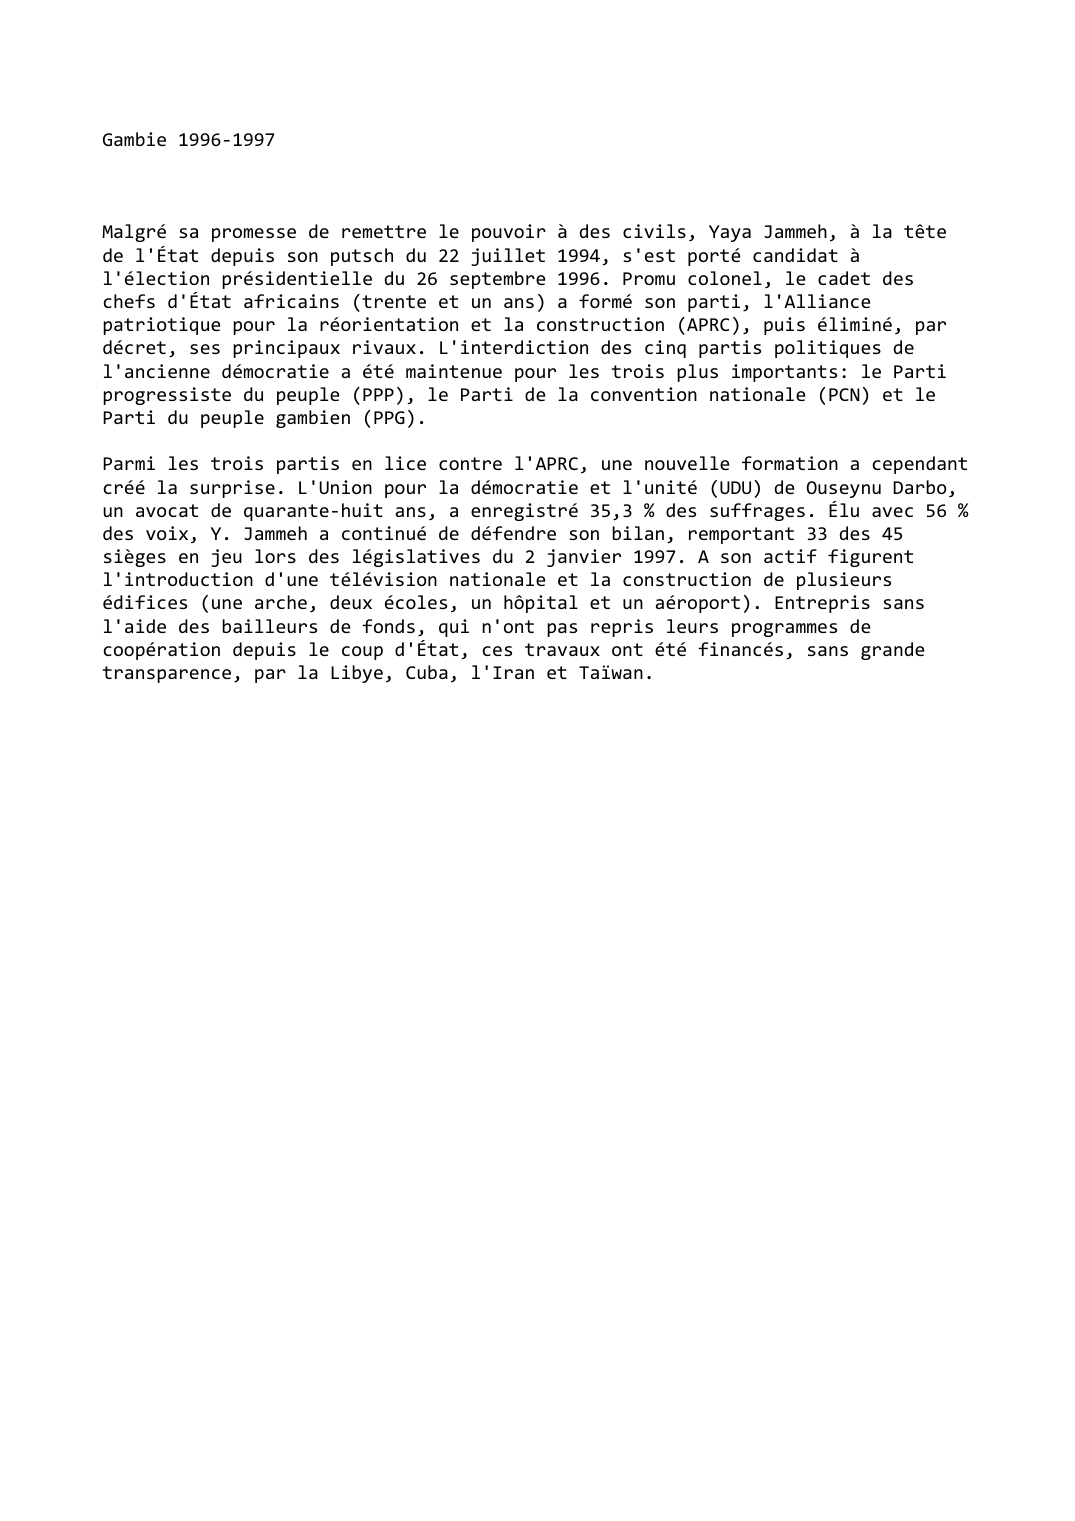 Prévisualisation du document Gambie (1996-1997)